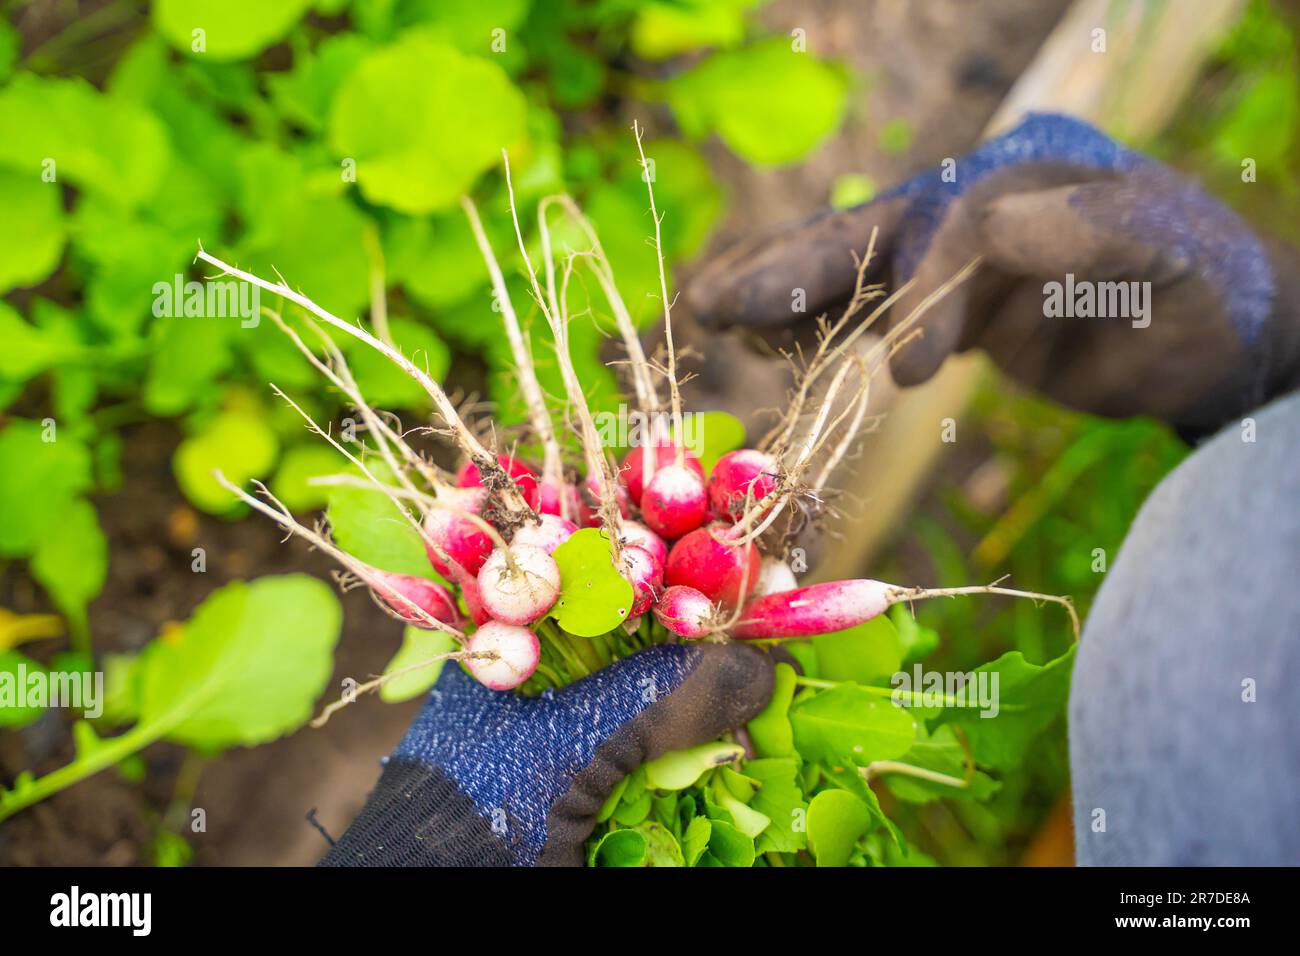 Eine Hand hält eine Ernte von rotem Rettich in Nahaufnahme vor dem Hintergrund eines Gartenbetts. Frühernte eines Wurzelgemüses in einem Gewächshaus Stockfoto